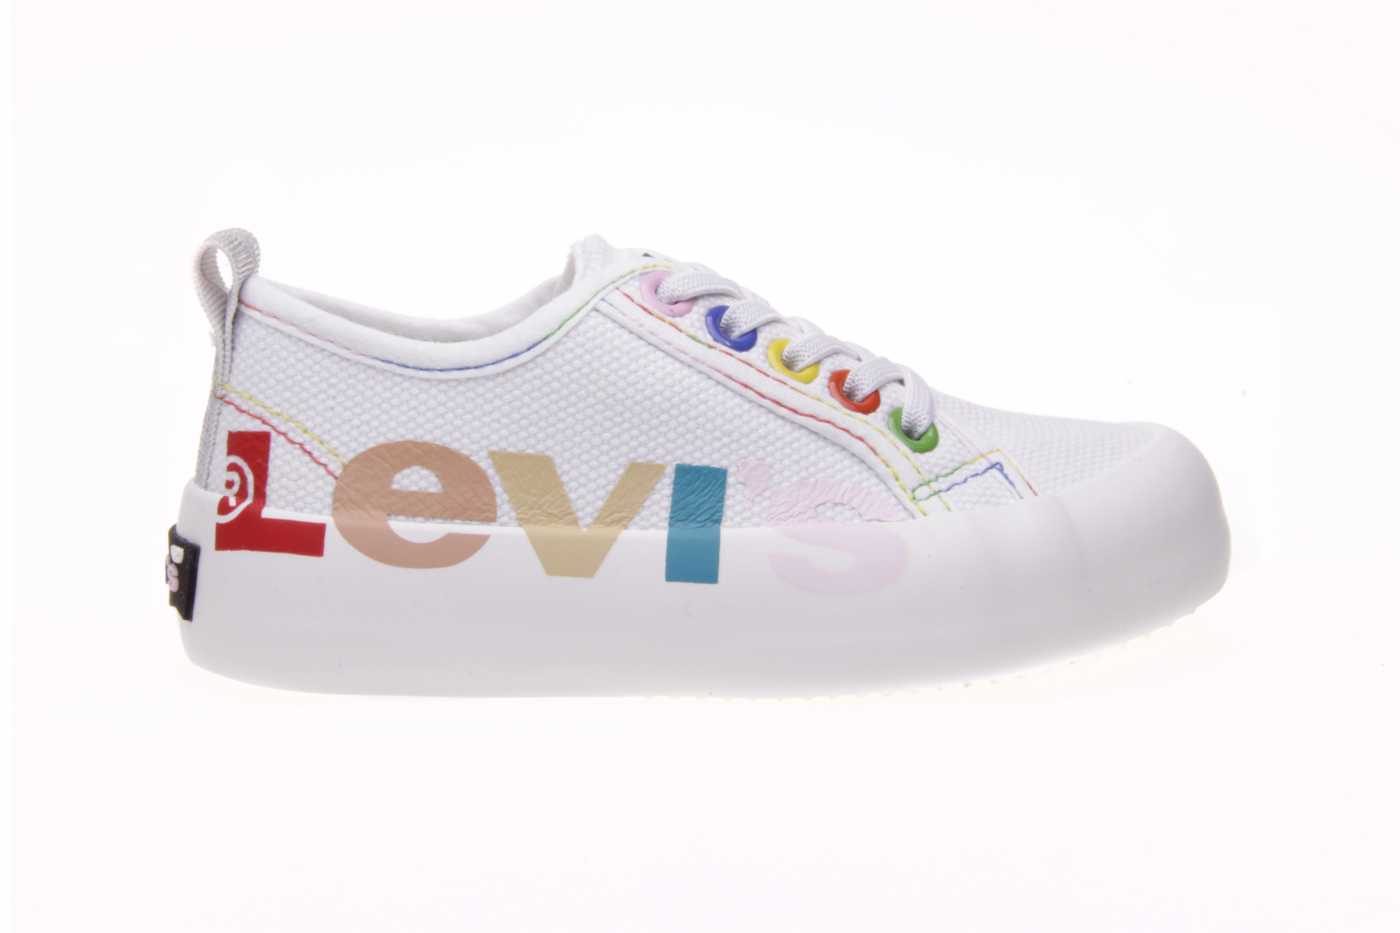 Comprar zapato LEVIS para JOVEN NIÑA estilo LONA color BLANCO LONA